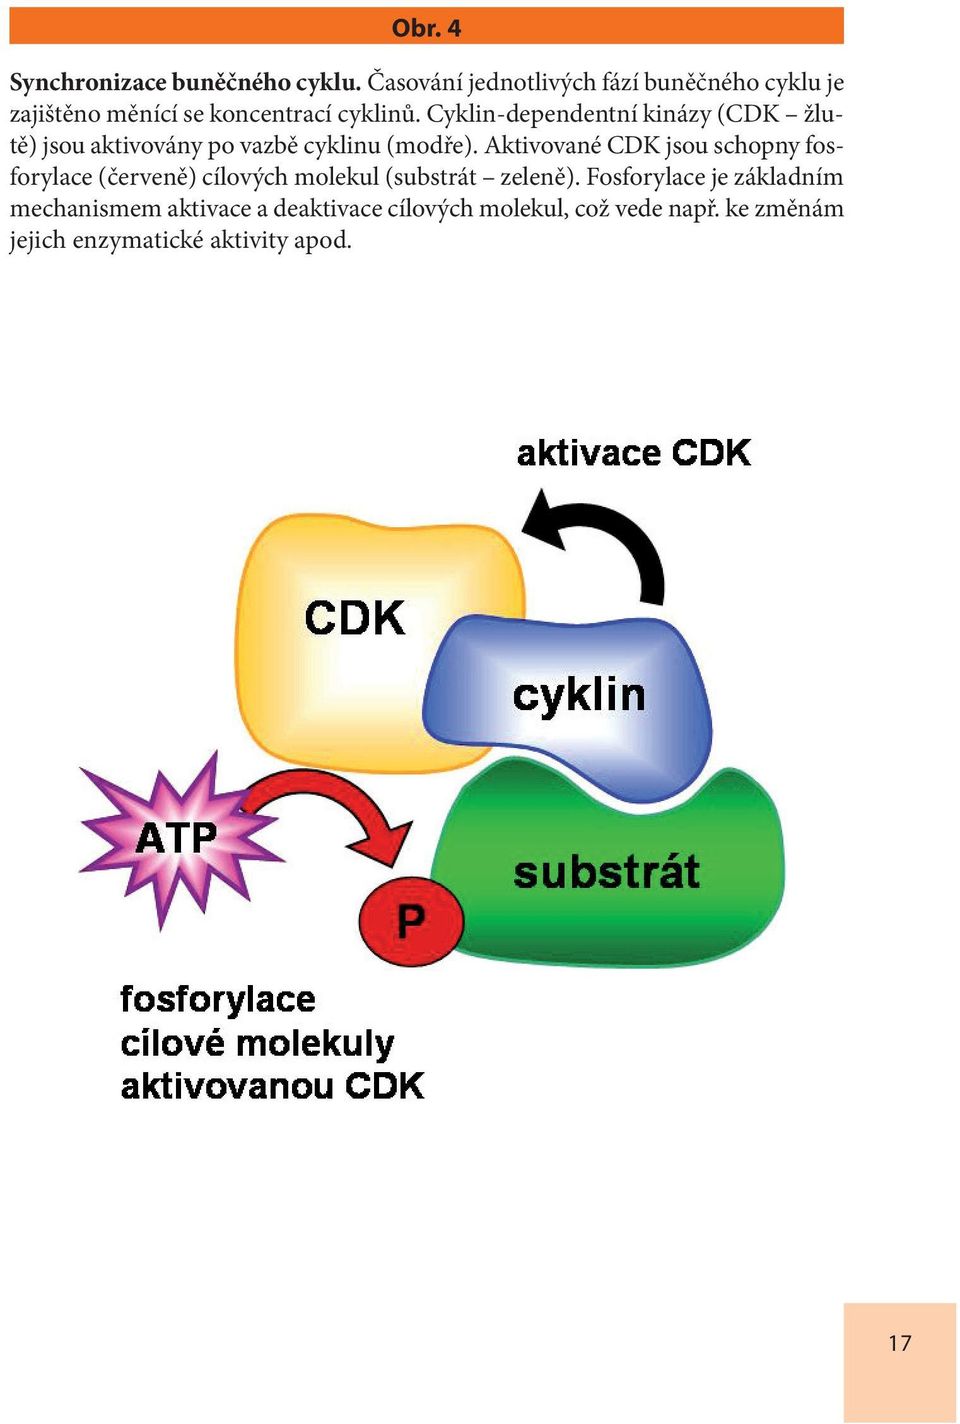 Cyklin-dependentní kinázy (CDK žlutě) jsou aktivovány po vazbě cyklinu (modře).